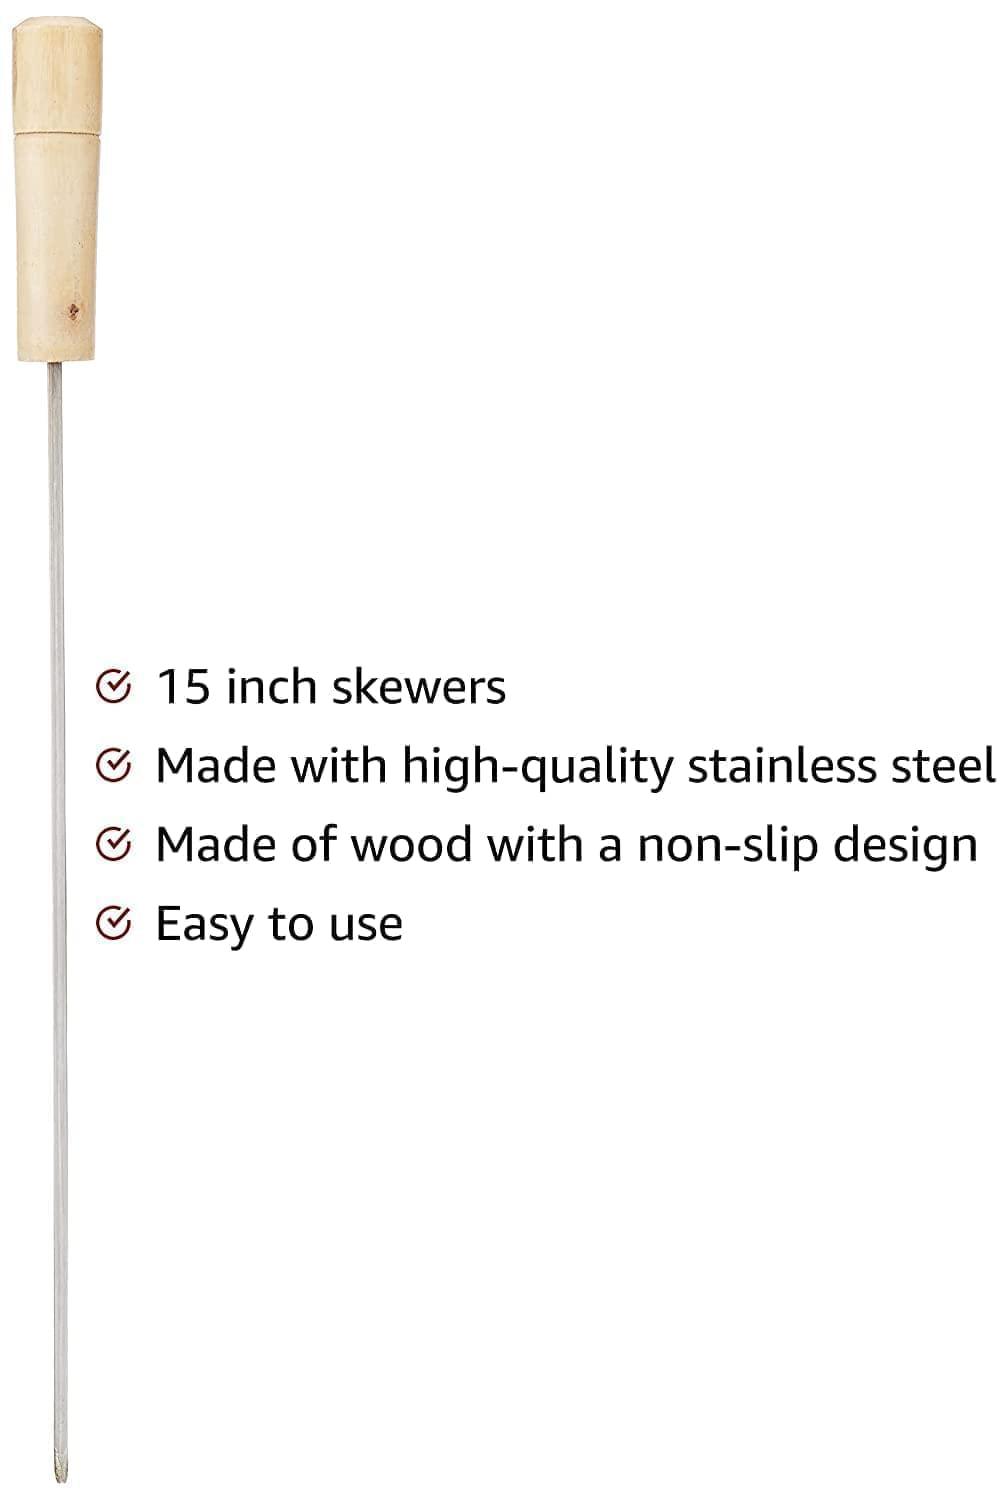 Wellberg Stainless Steel Barbeque Skewers, 15 inch - Set of 6 - WELLBERG